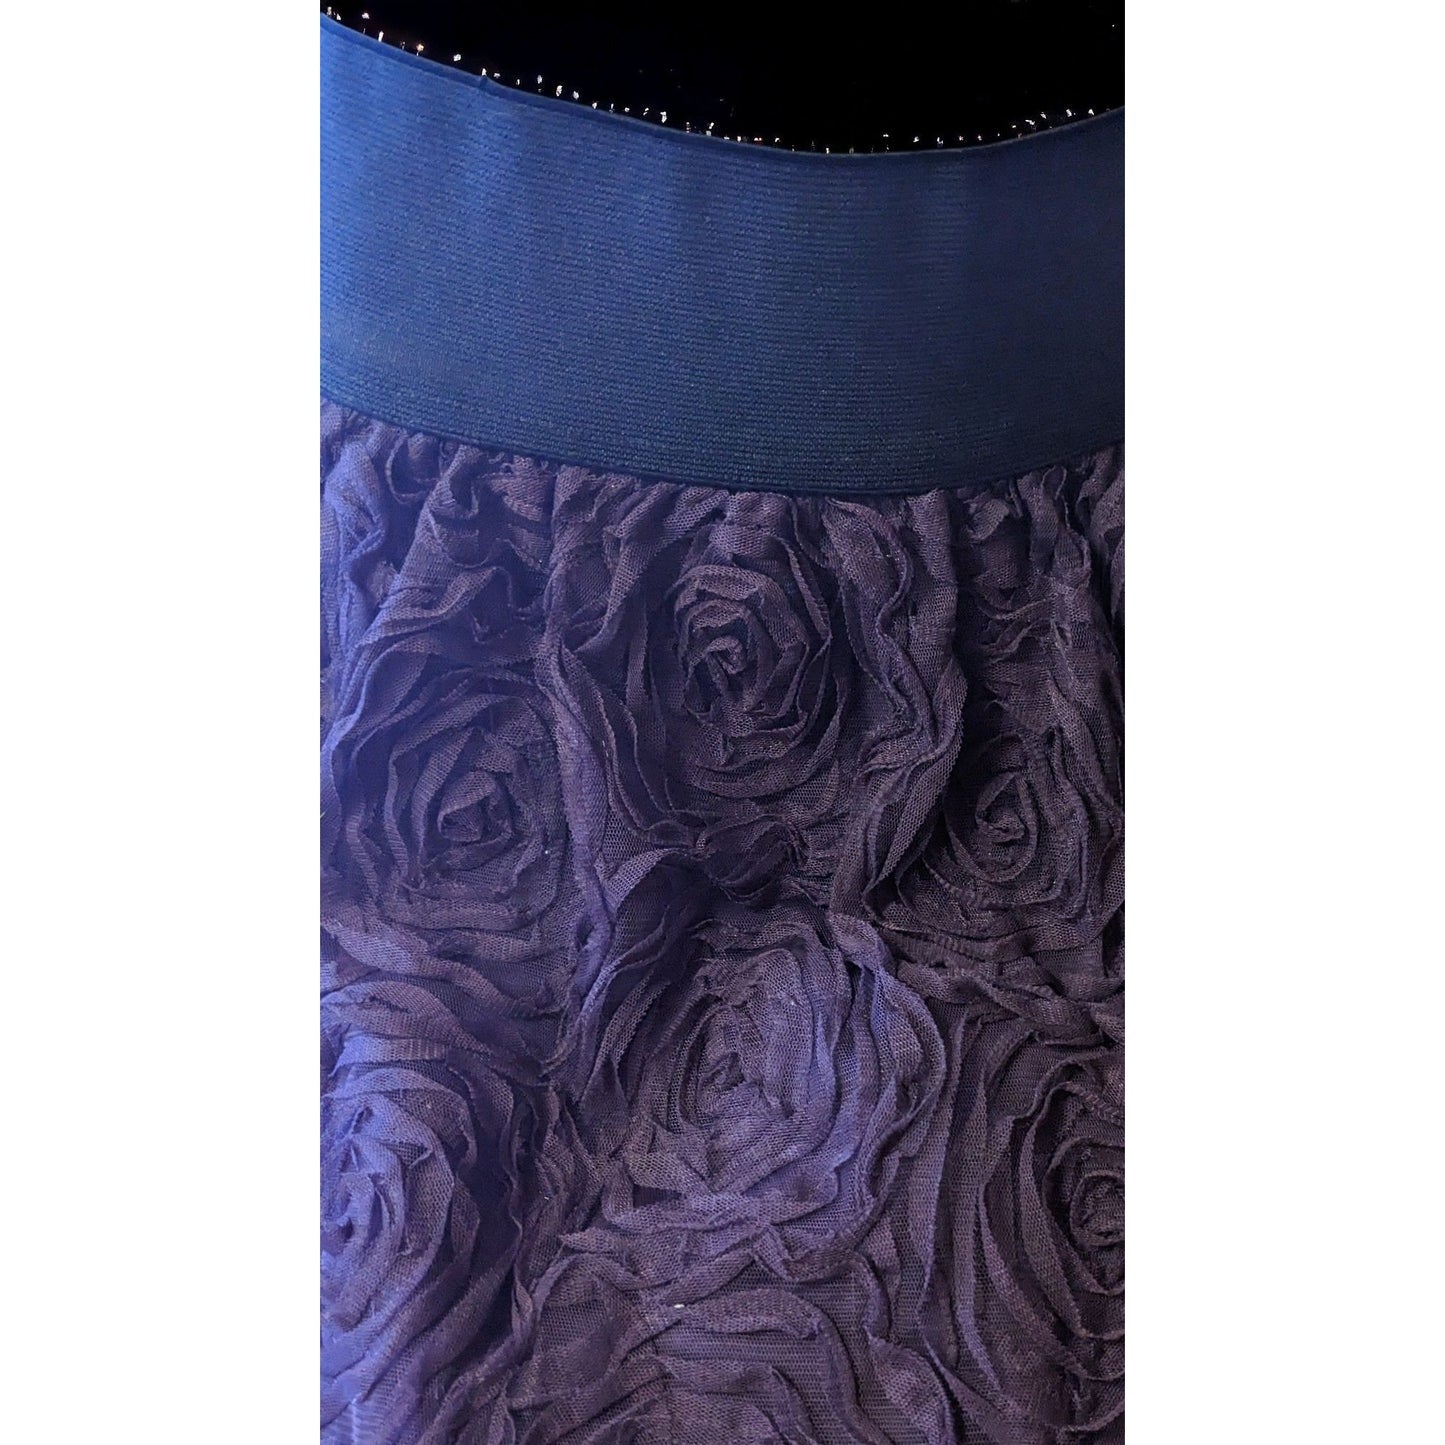 Stooshy Purple Rose Mini Skirt